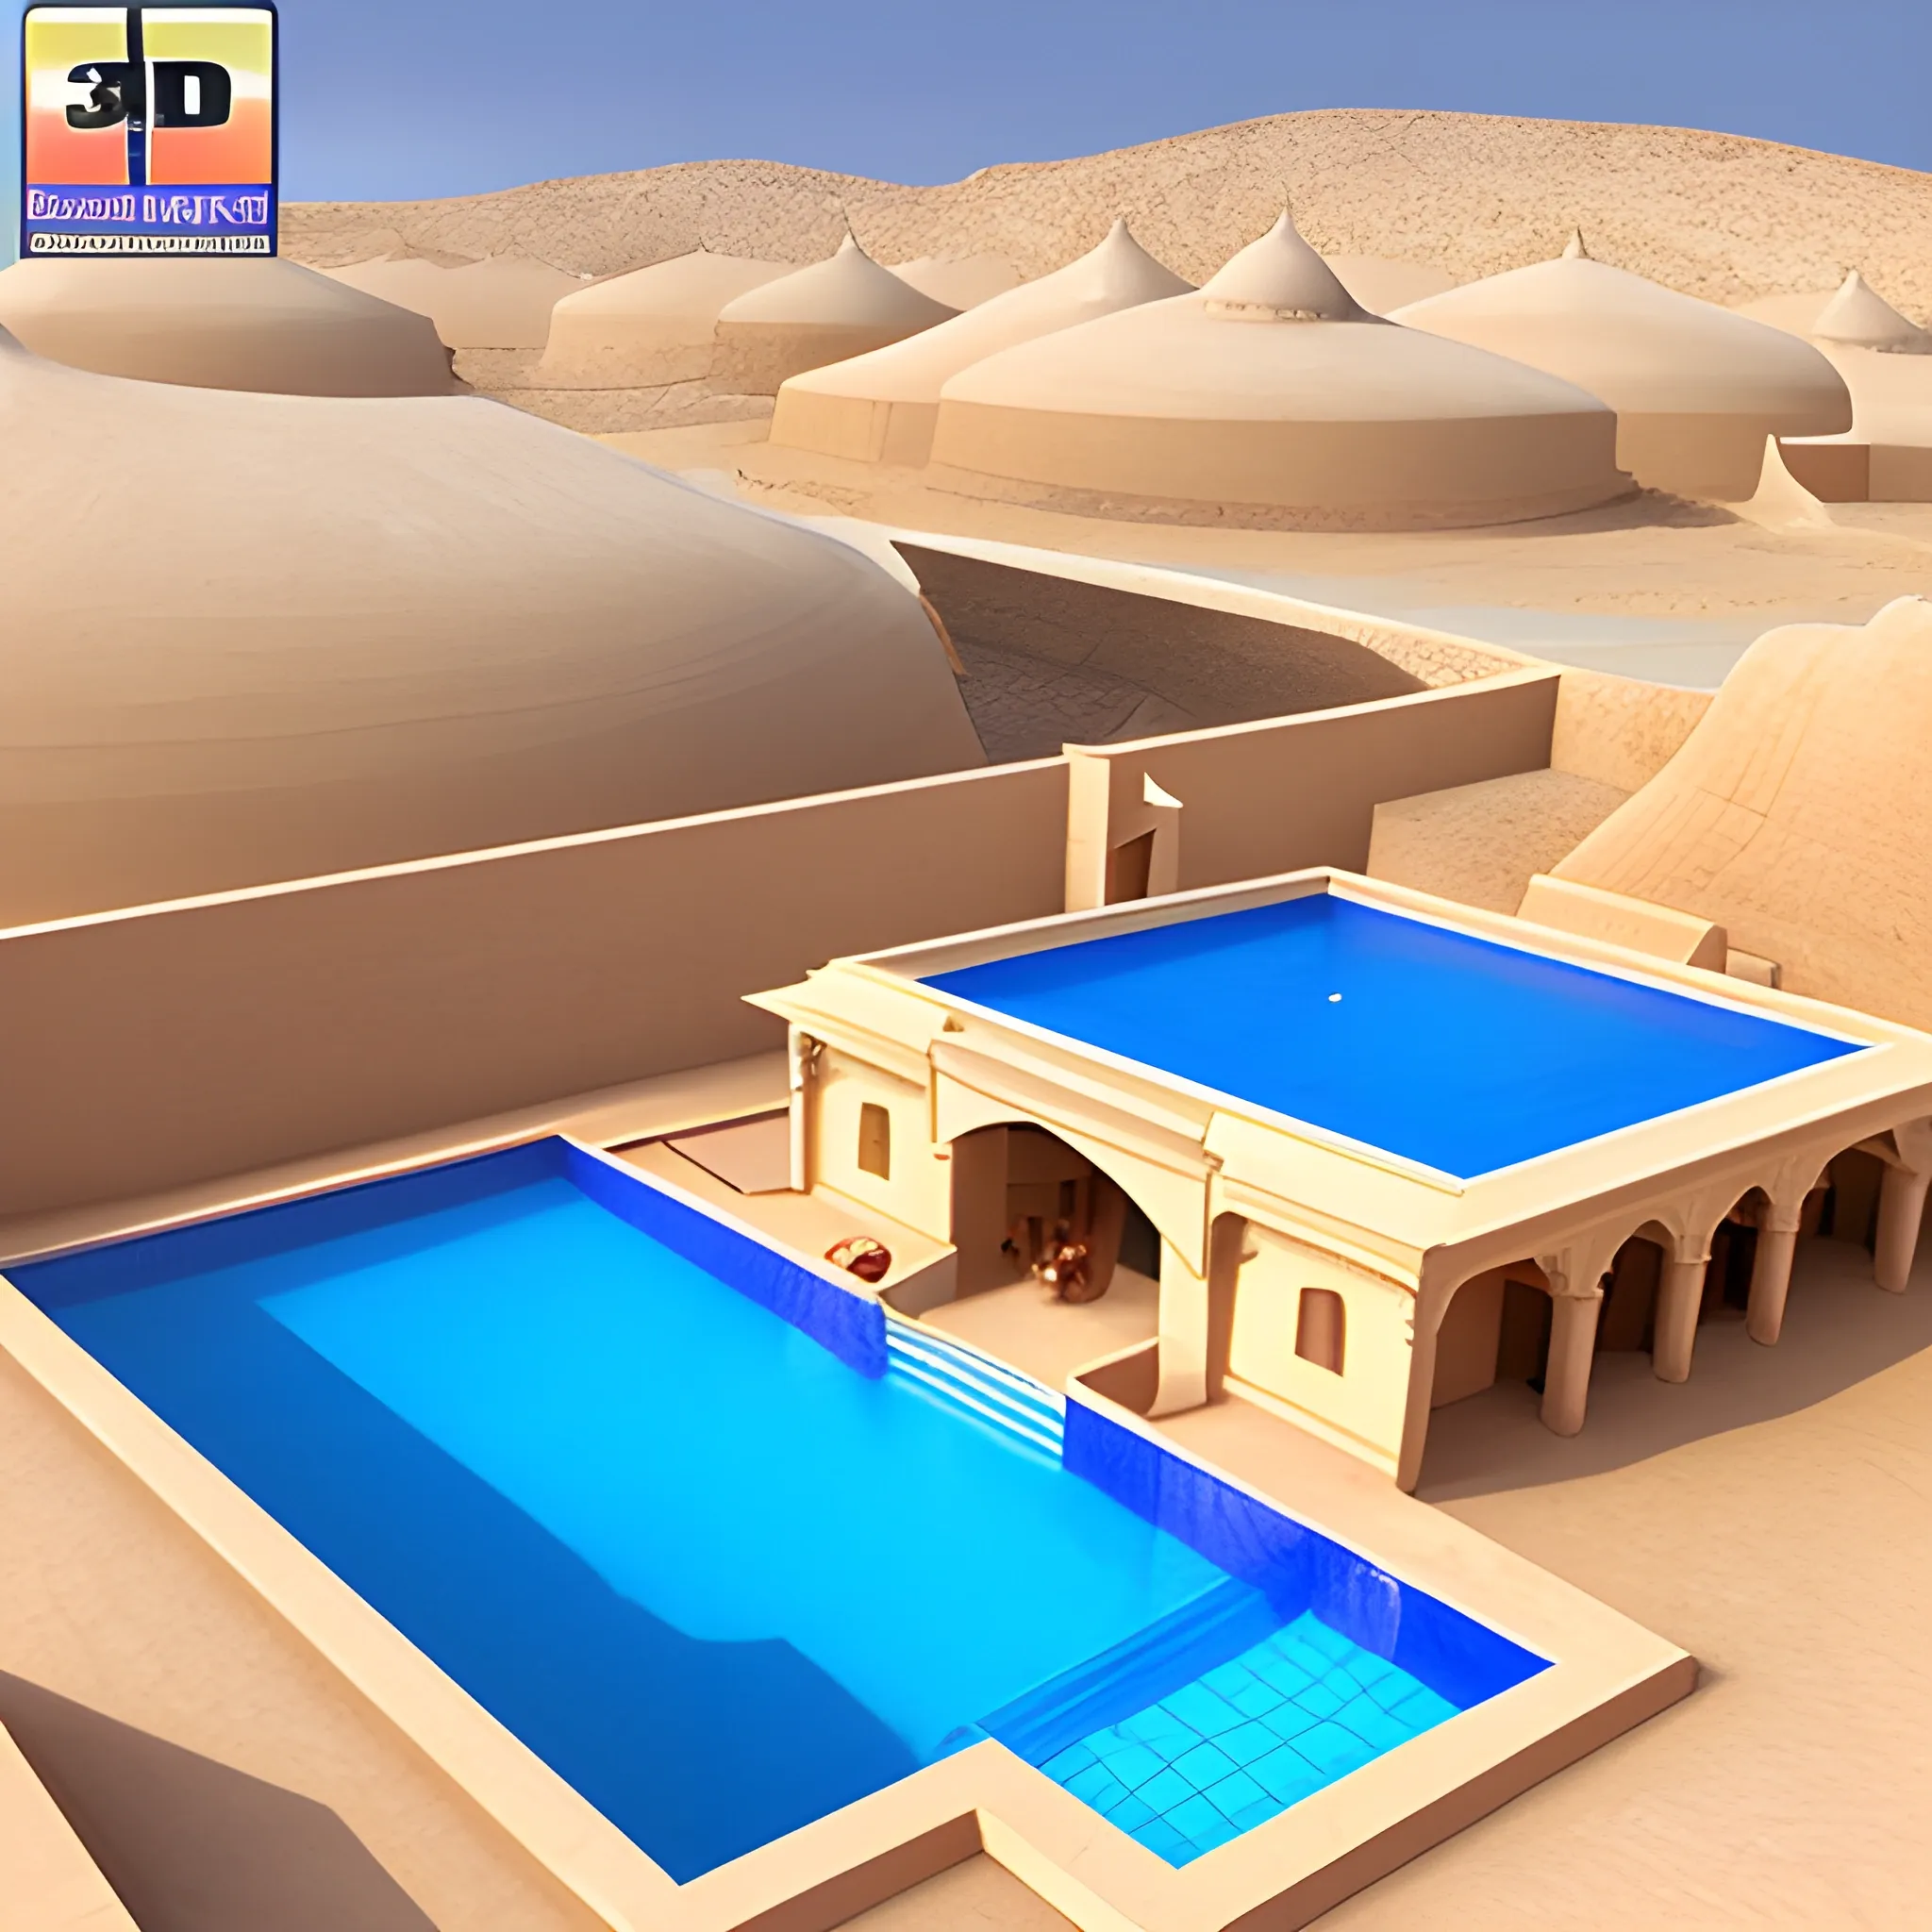  rajasthan desert swiming pool, 3D